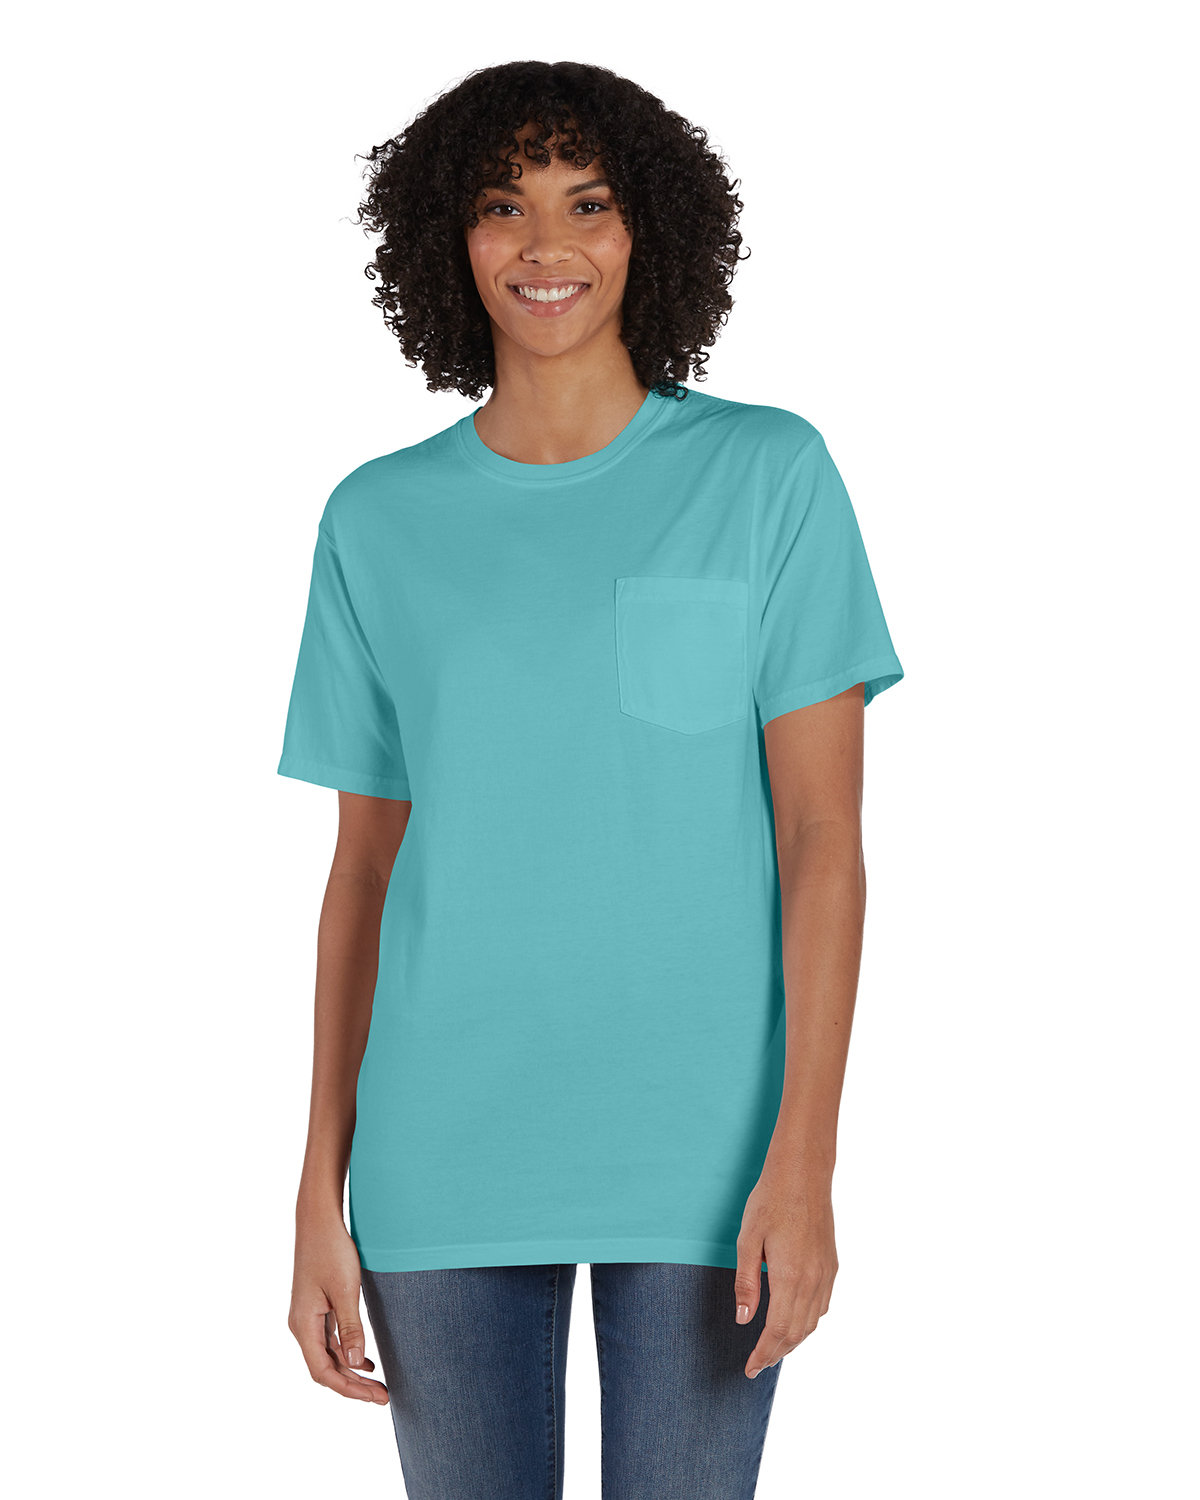 Promotional Hanes 50/50 ComfortBlend T-Shirt - Colors